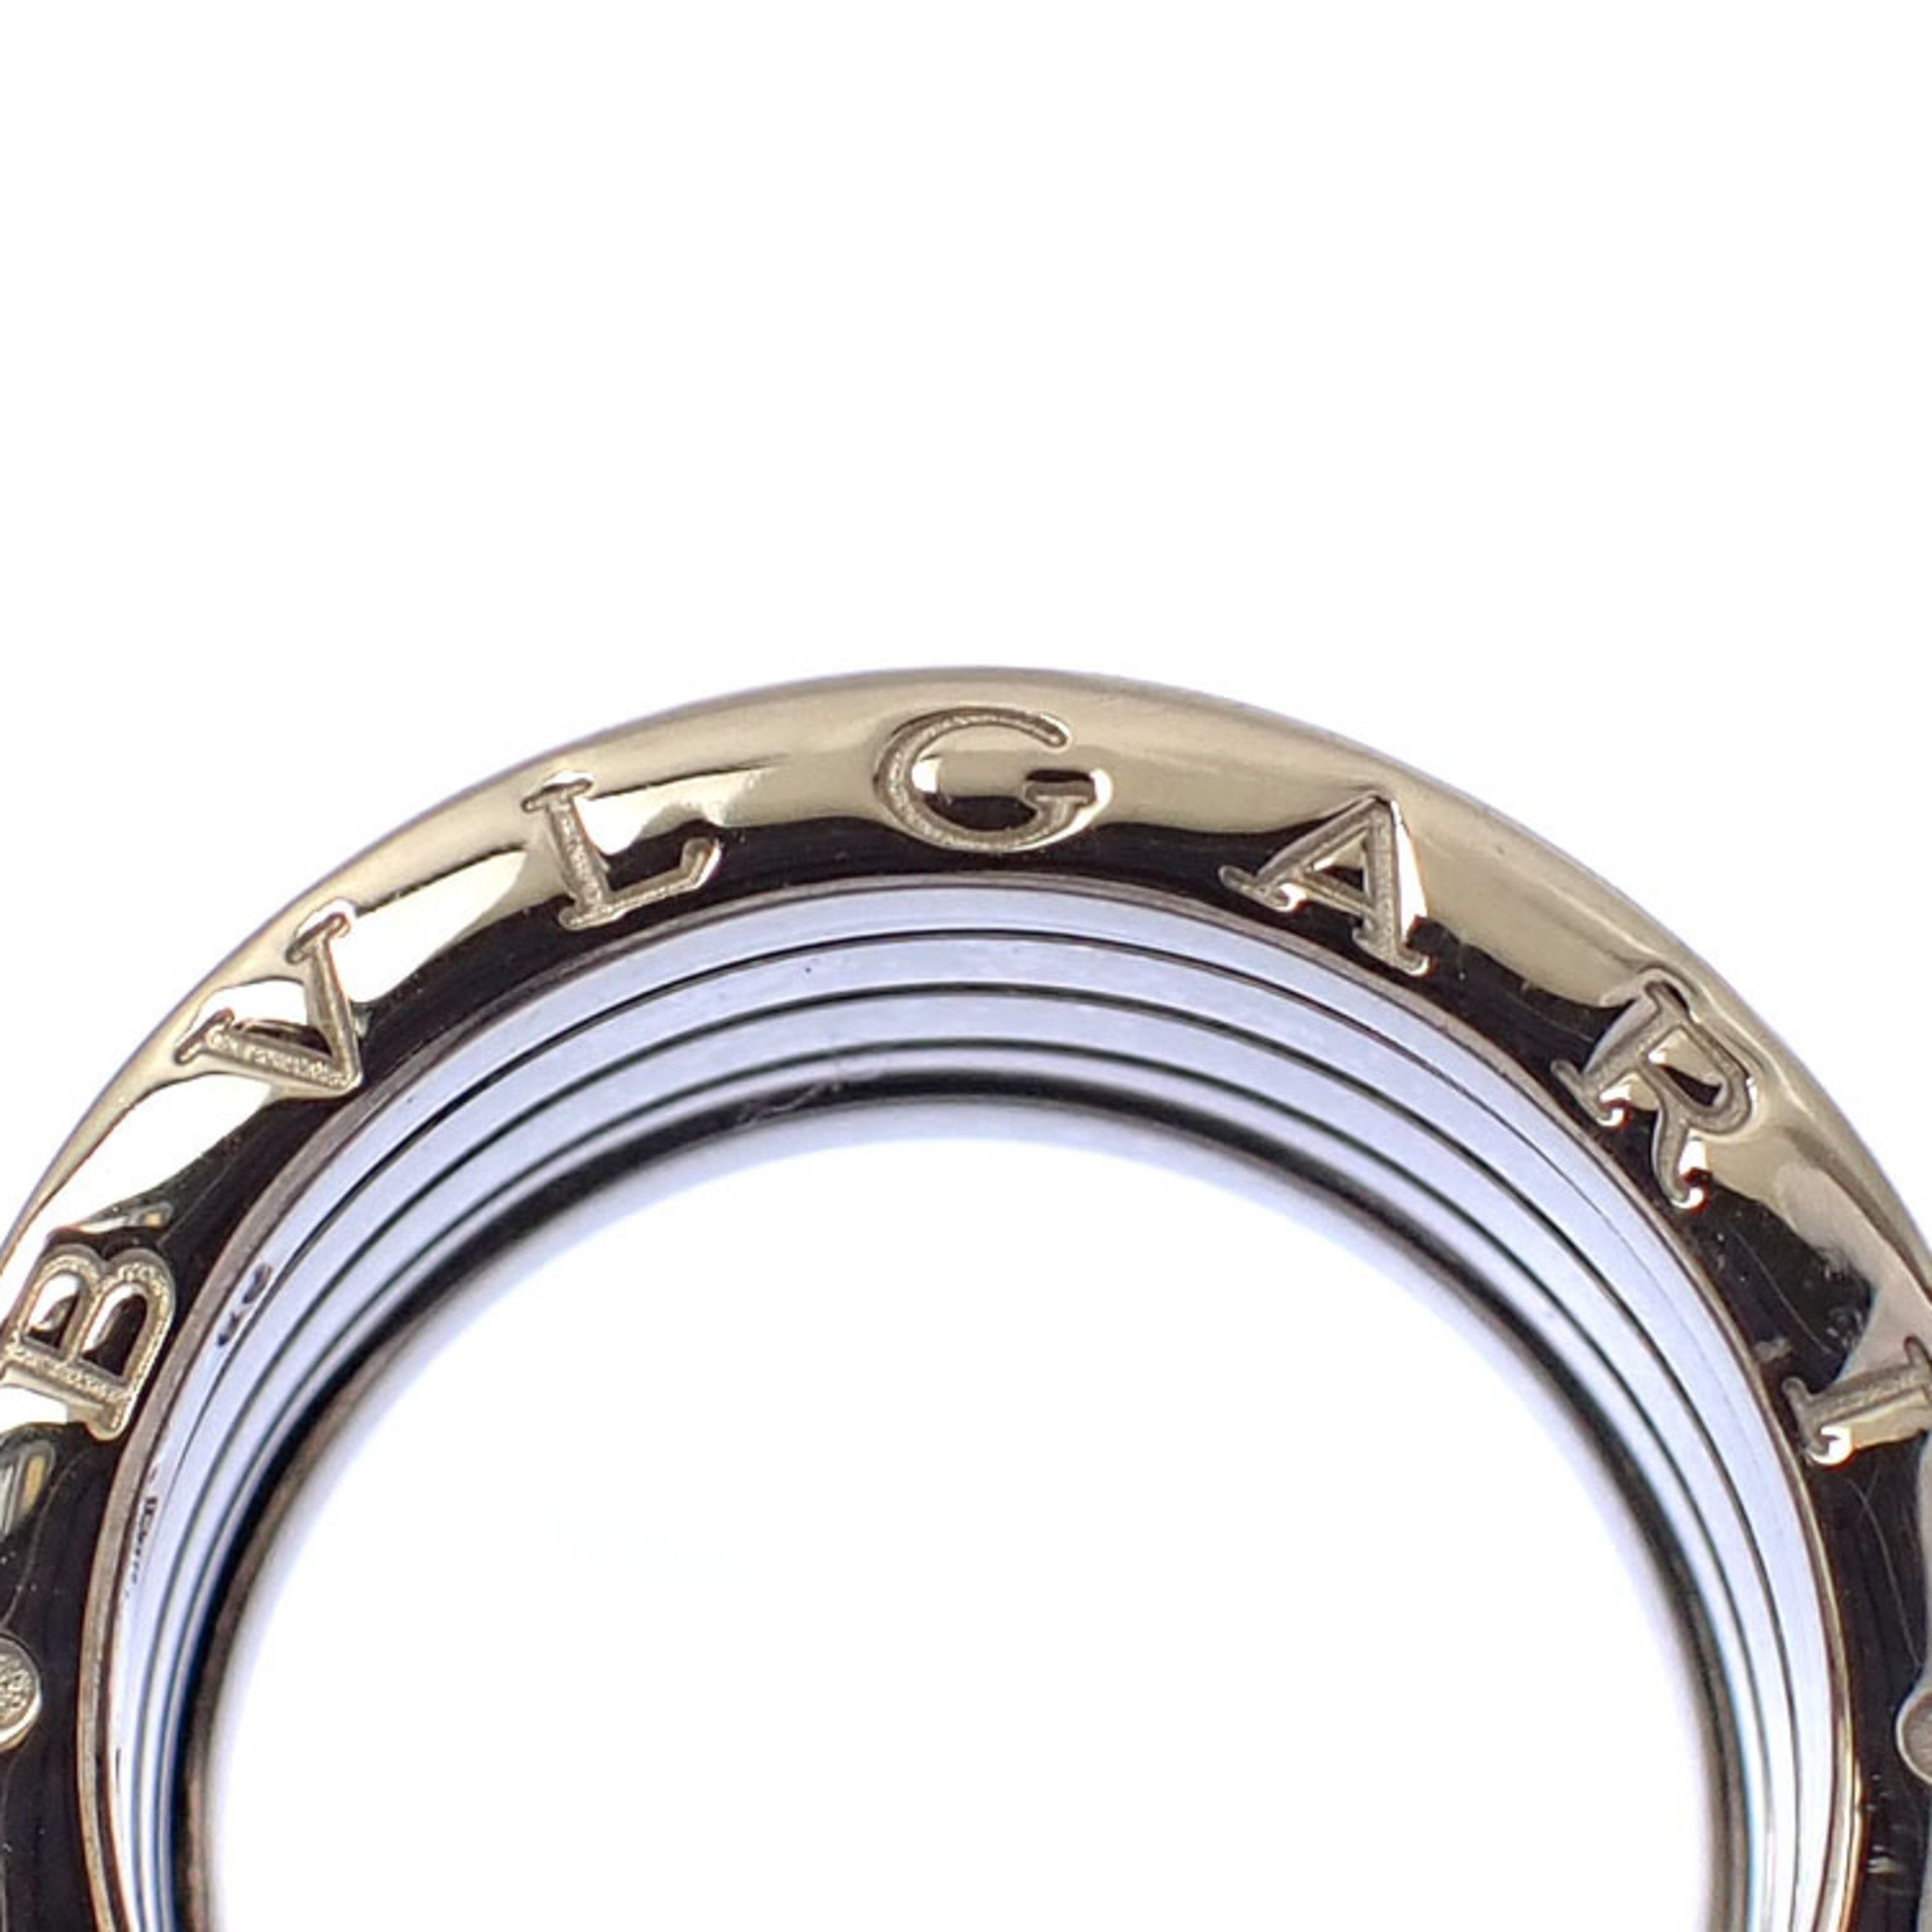 Bvlgari Bulgari B-ZERO1 Ring for Women, K18WG, Size 14, #55, 13.1g, 750, 18K White Gold, B-Zero One